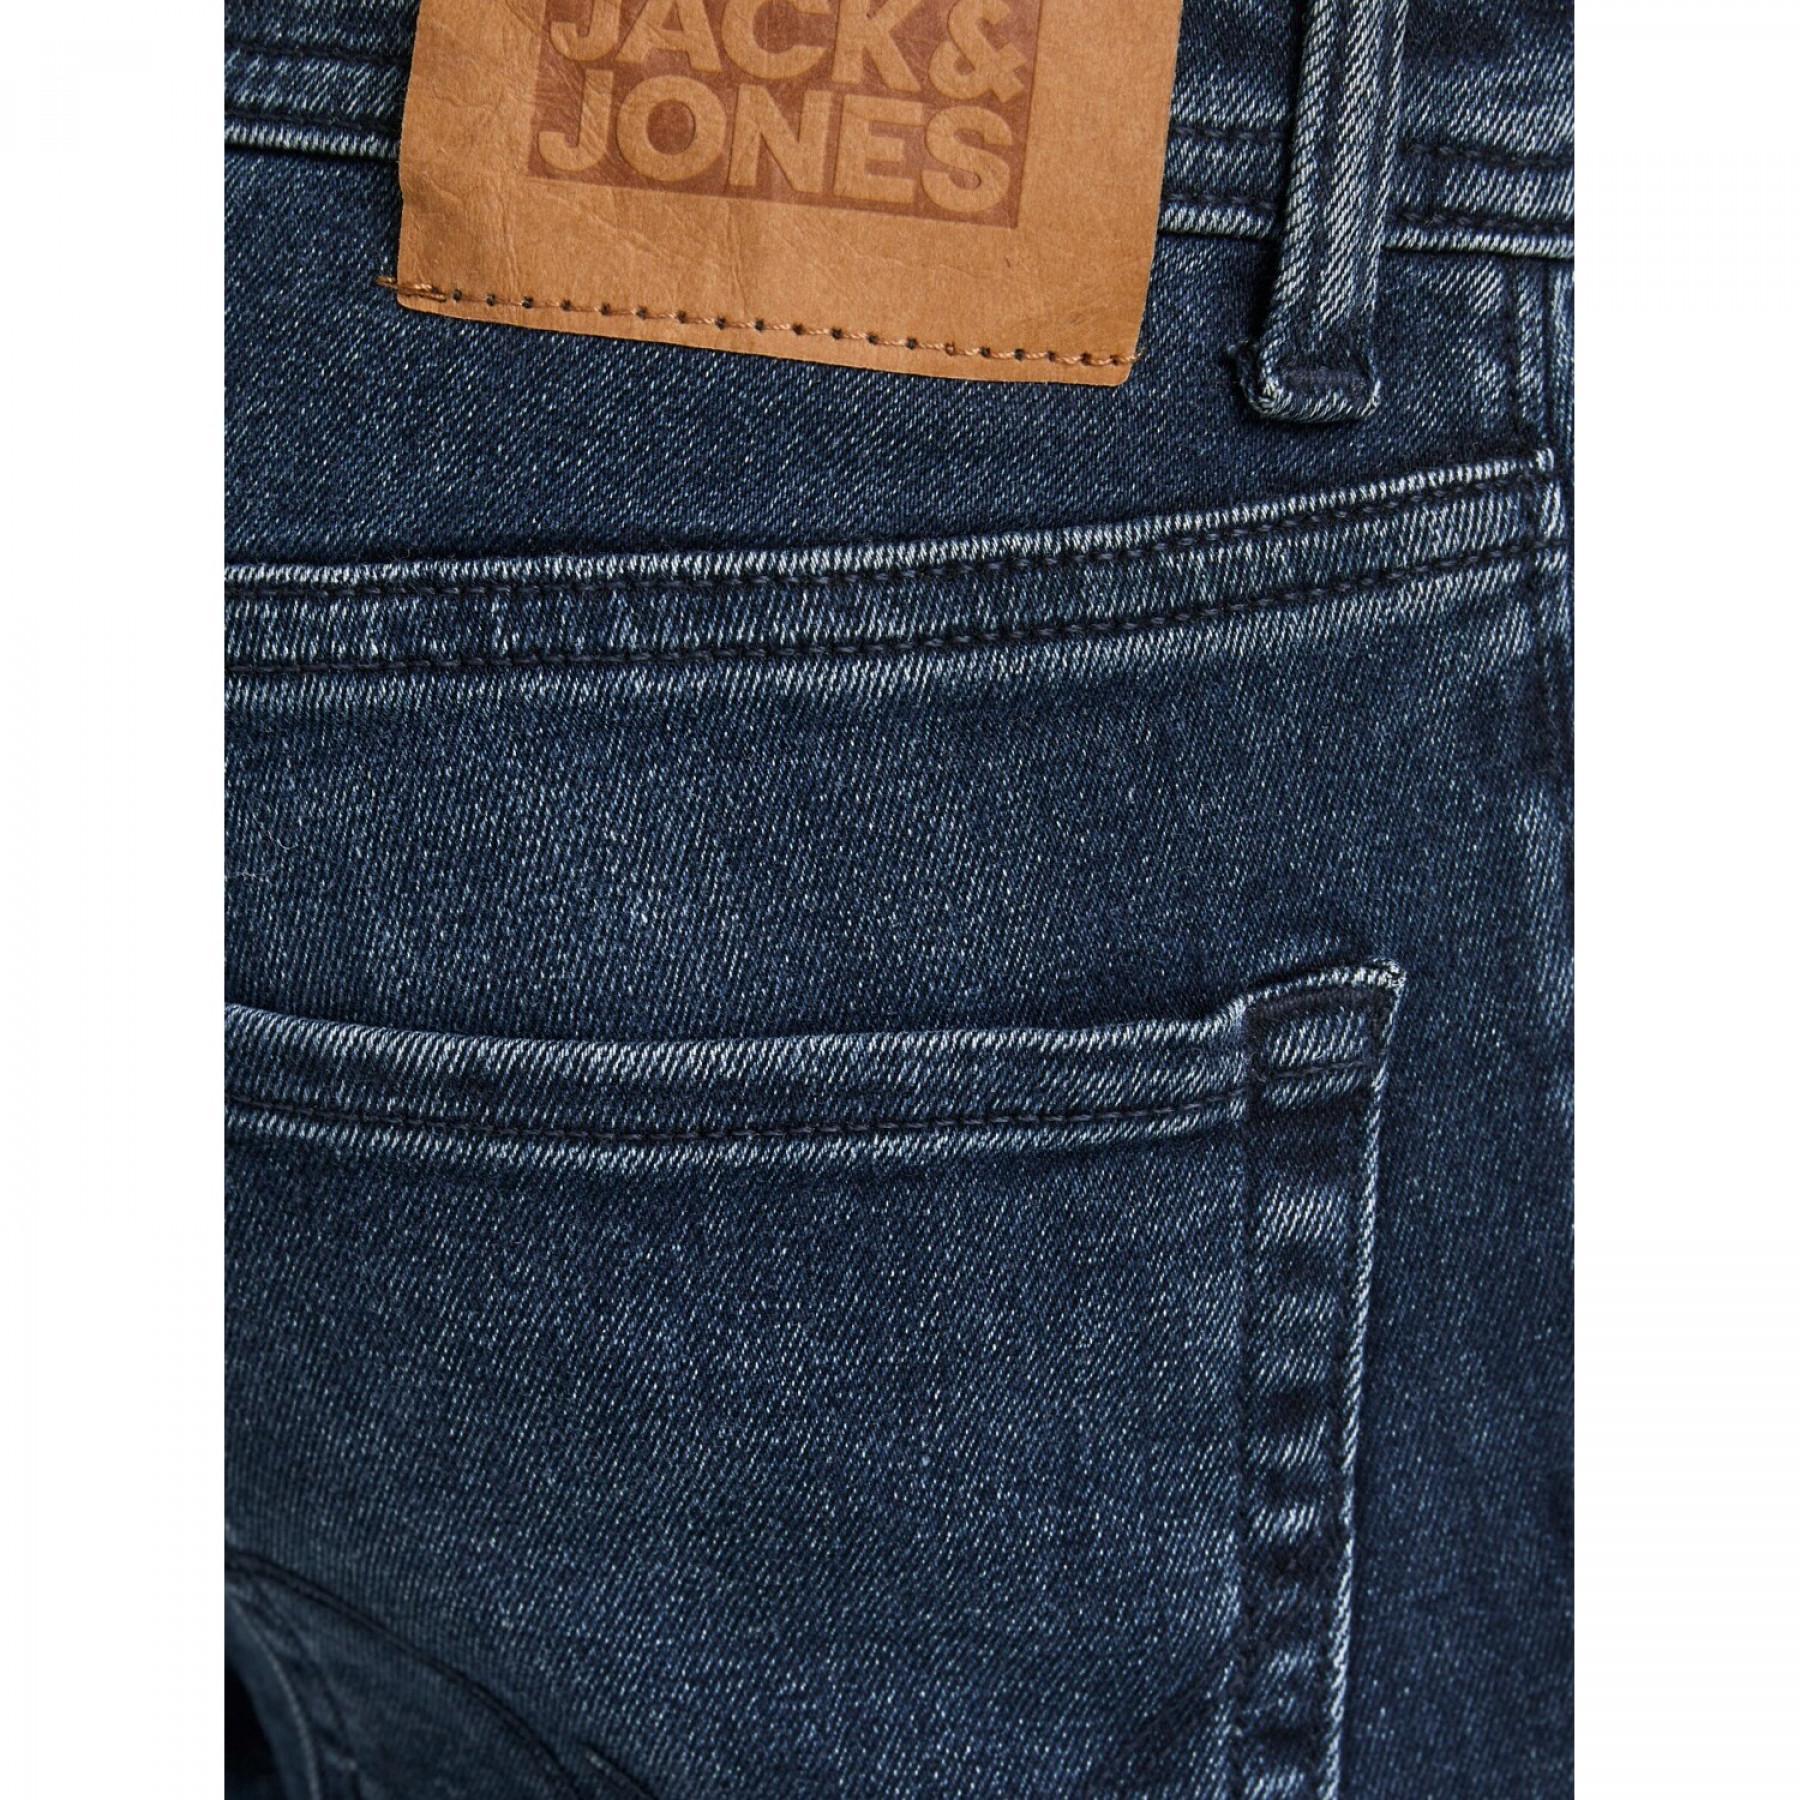 Pantalones vaqueros para niños Jack & Jones Liam Original